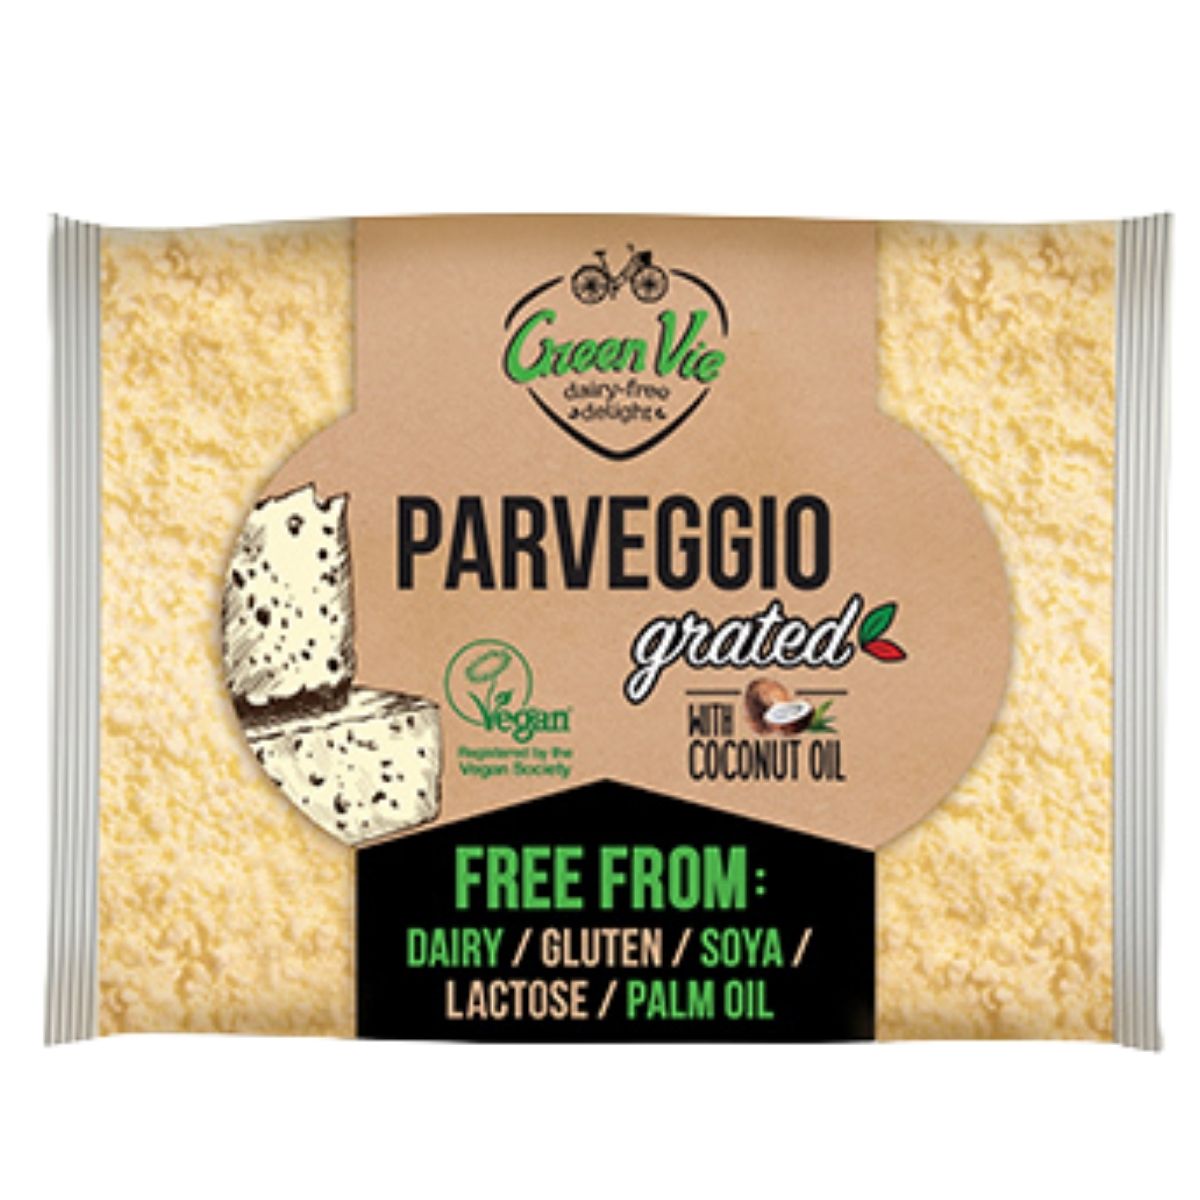 GreenVie Grated ParVeggio - 100g